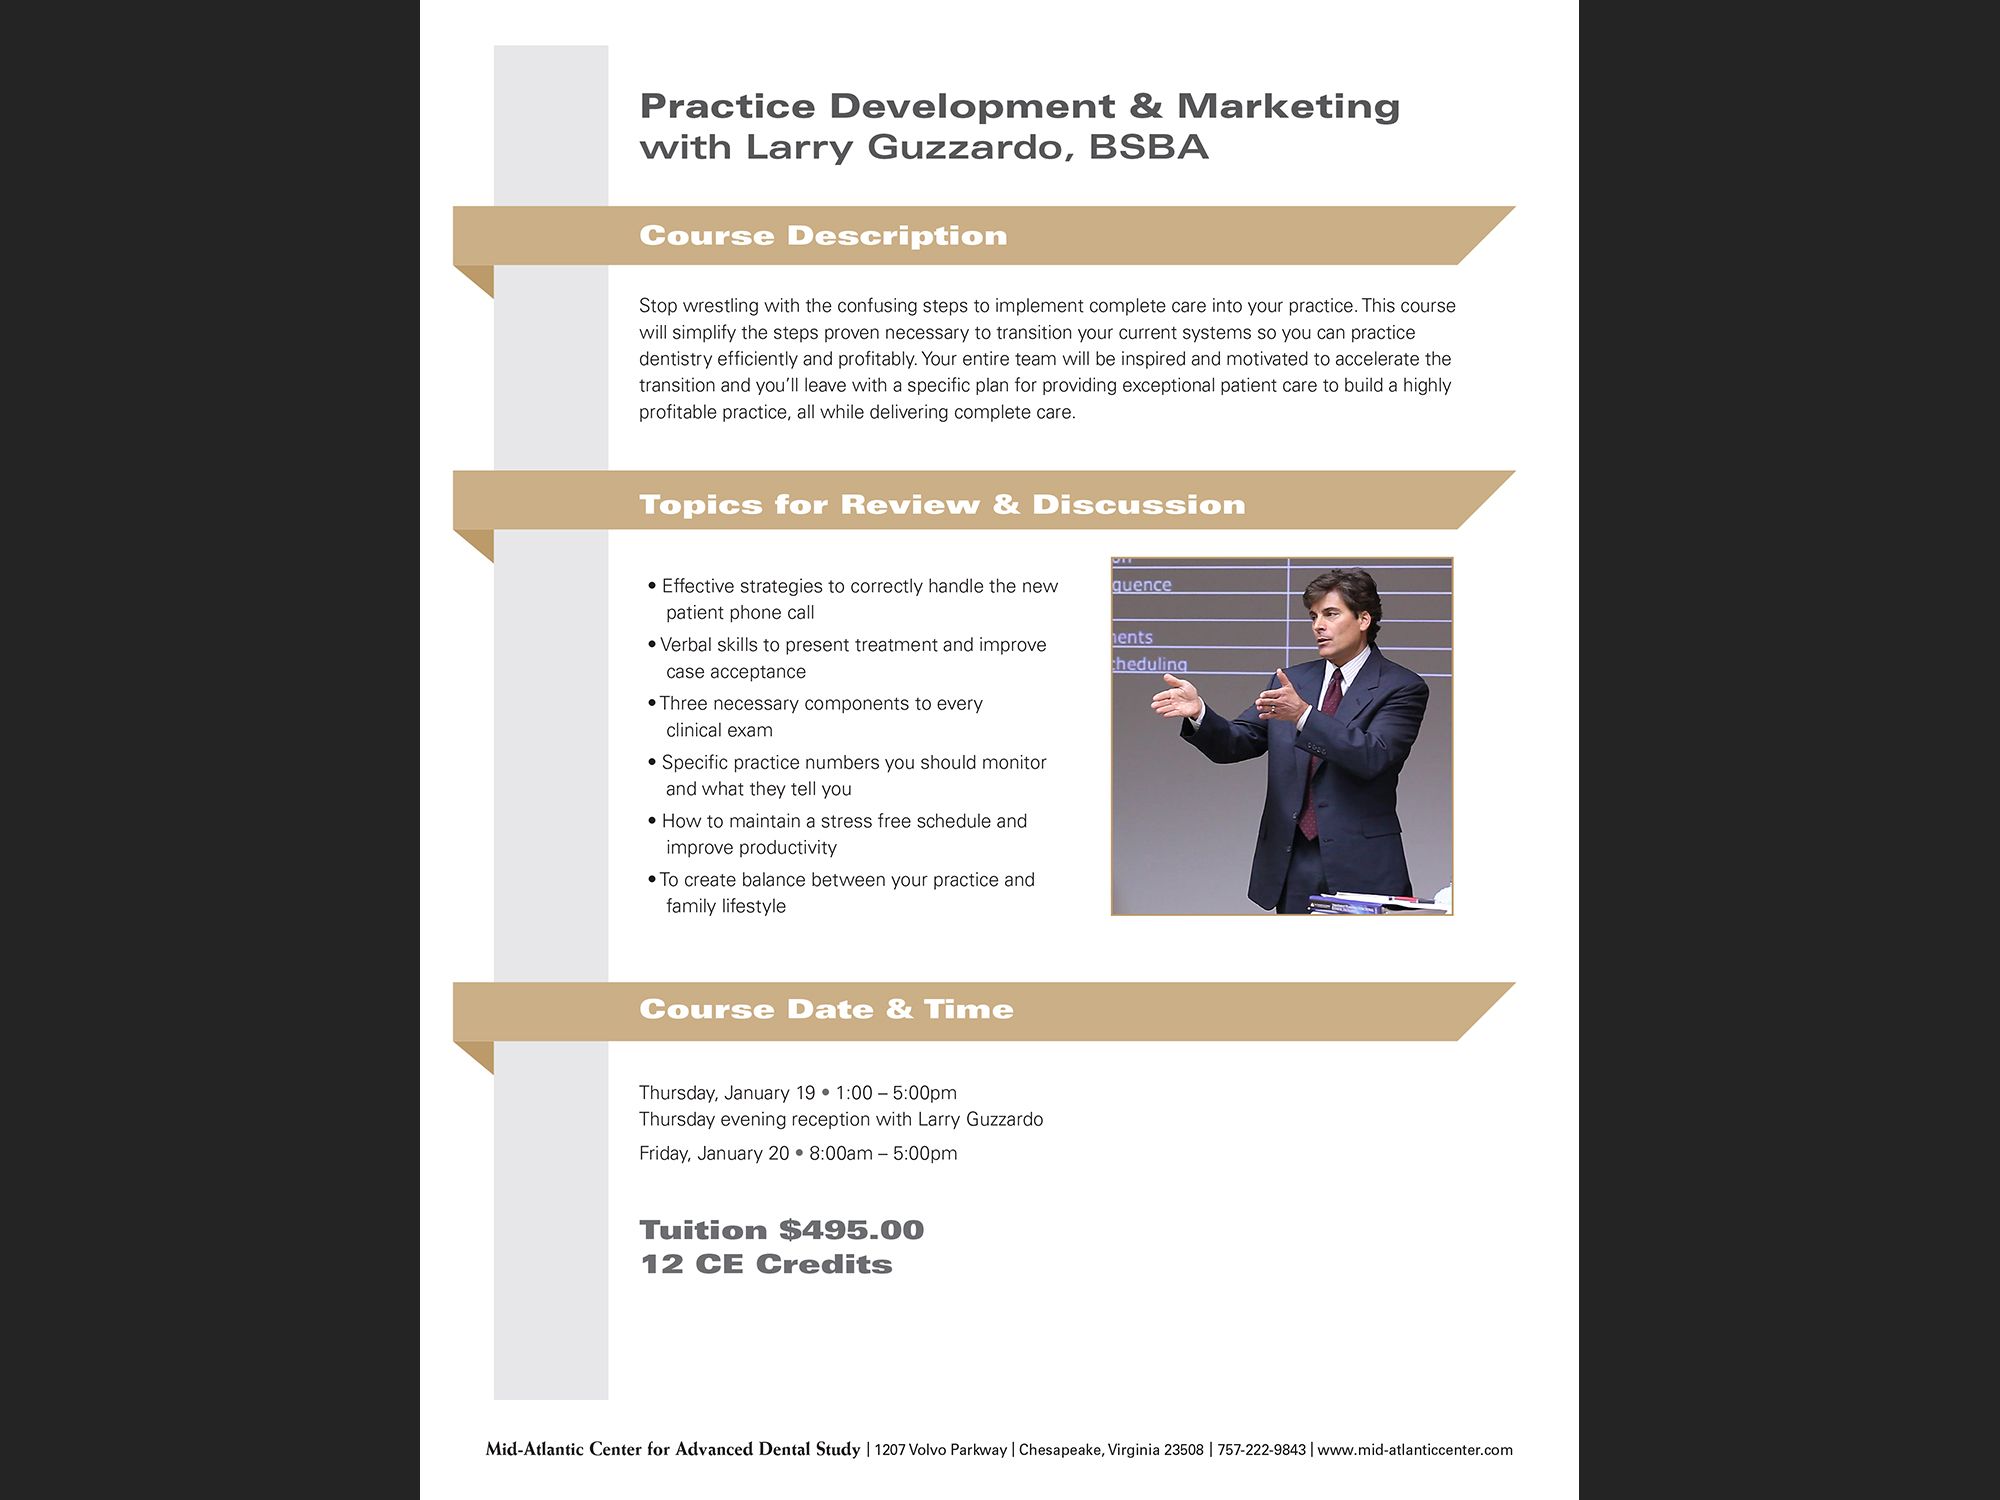 Practice Development & Marketing, Bay View Dental Lab, 2019; statement flyer.